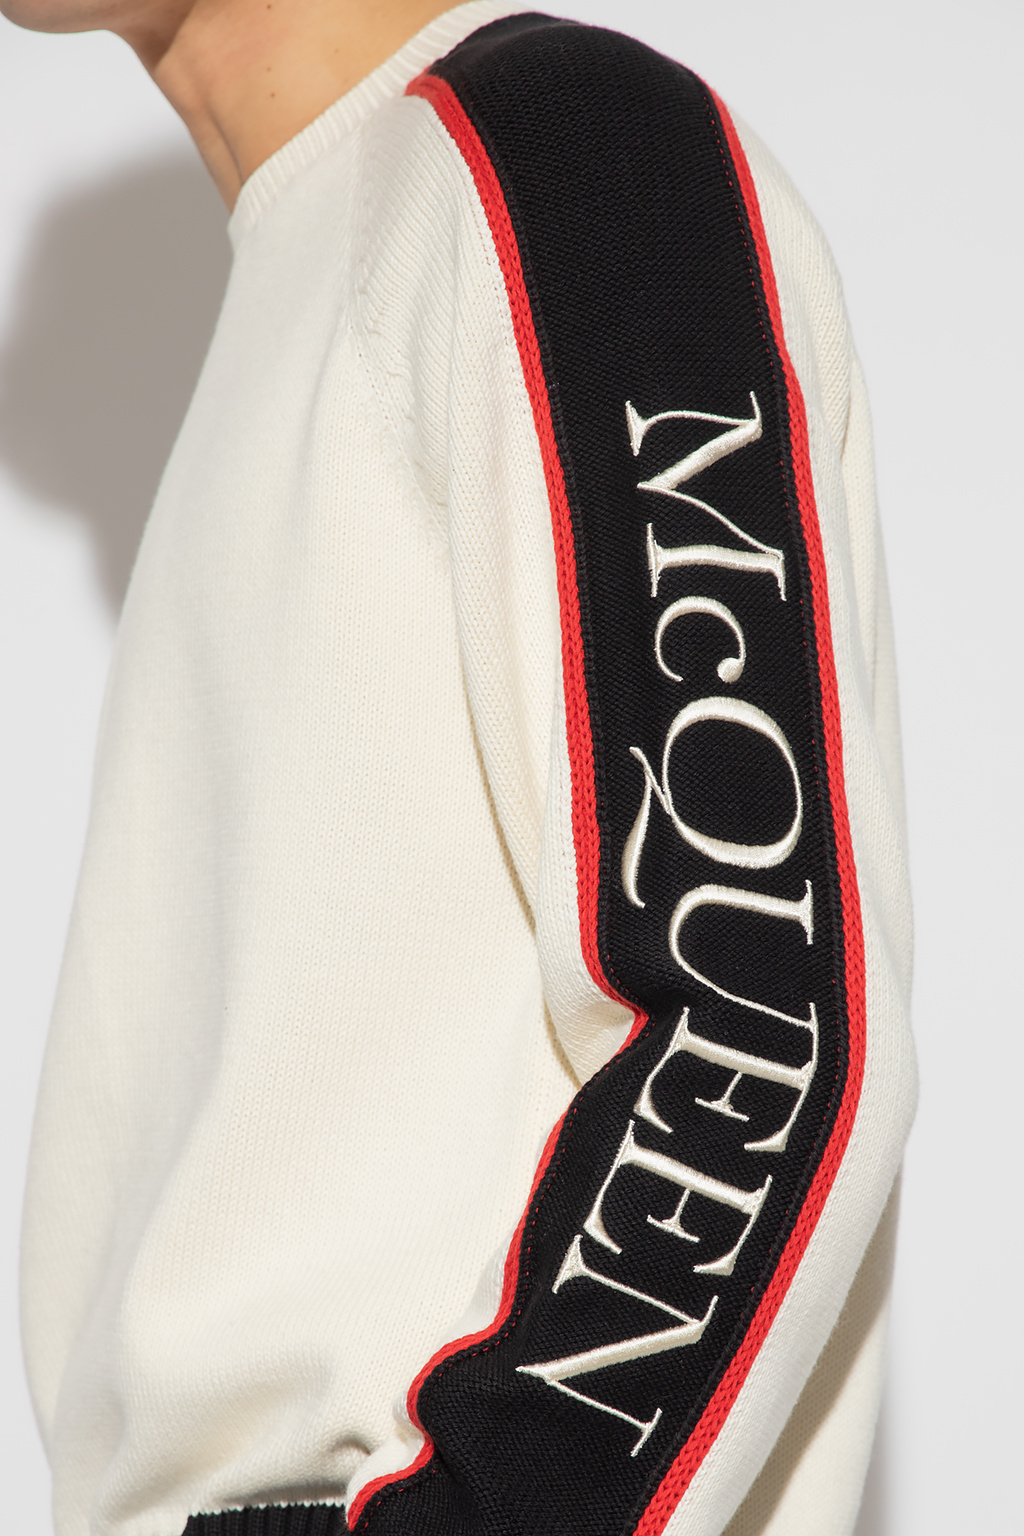 Alexander McQueen Alexander McQueen side-stripe logo skinny jeans